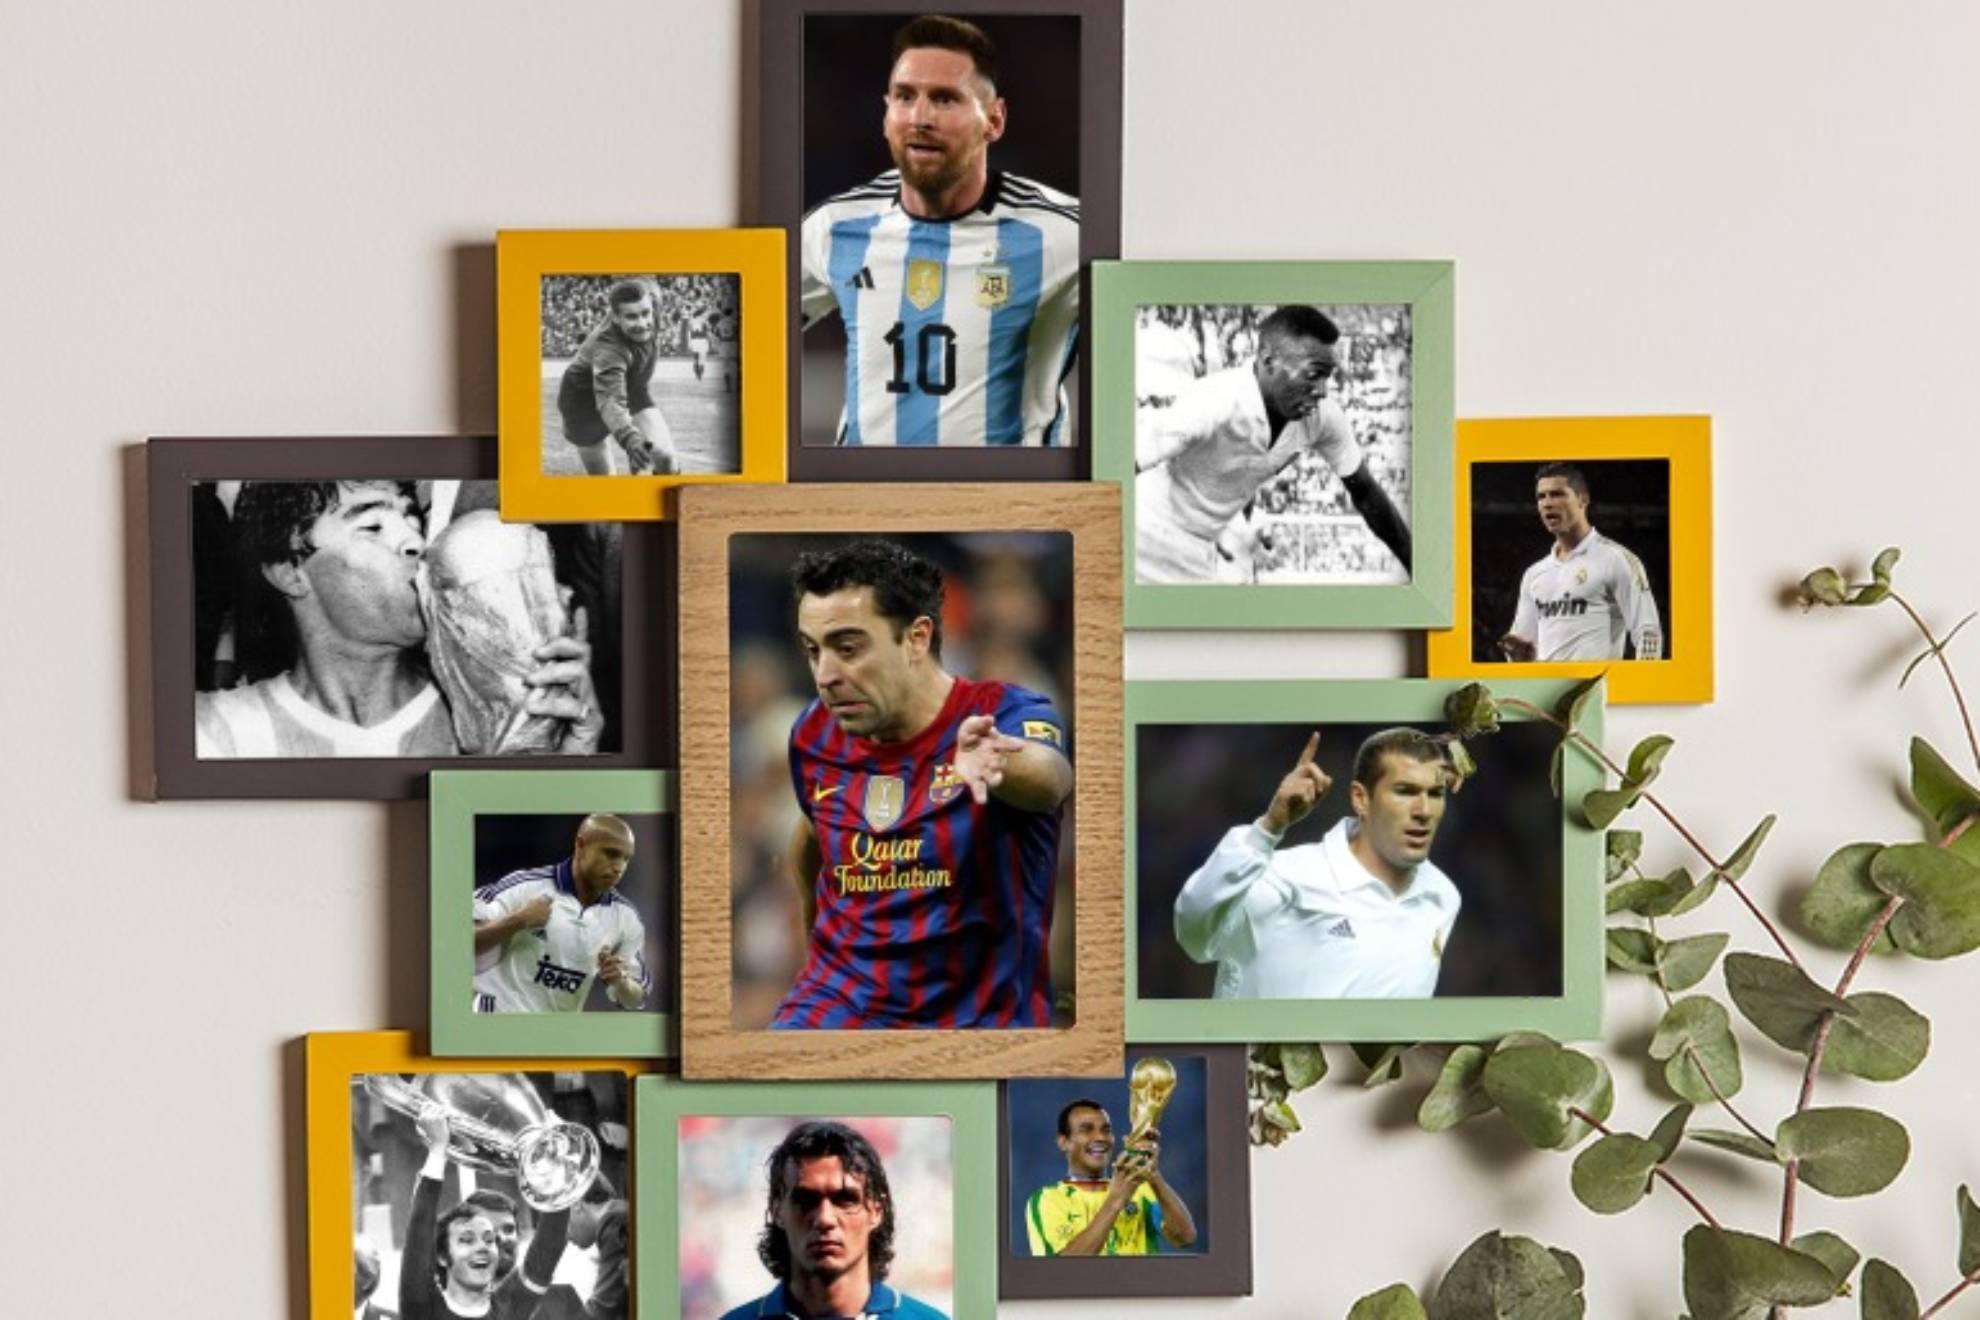 El mejor 11 de la historia del fútbol, según la Inteligencia Artificial, estaría formado por Lev Yashin; Cafú, Paolo Maldini, Franz Beckenbauer y Roberto Carlos; Zinedine Zidane, Xavi Hernández y Maradona; Cristiano Ronaldo, Pelé y Messi.